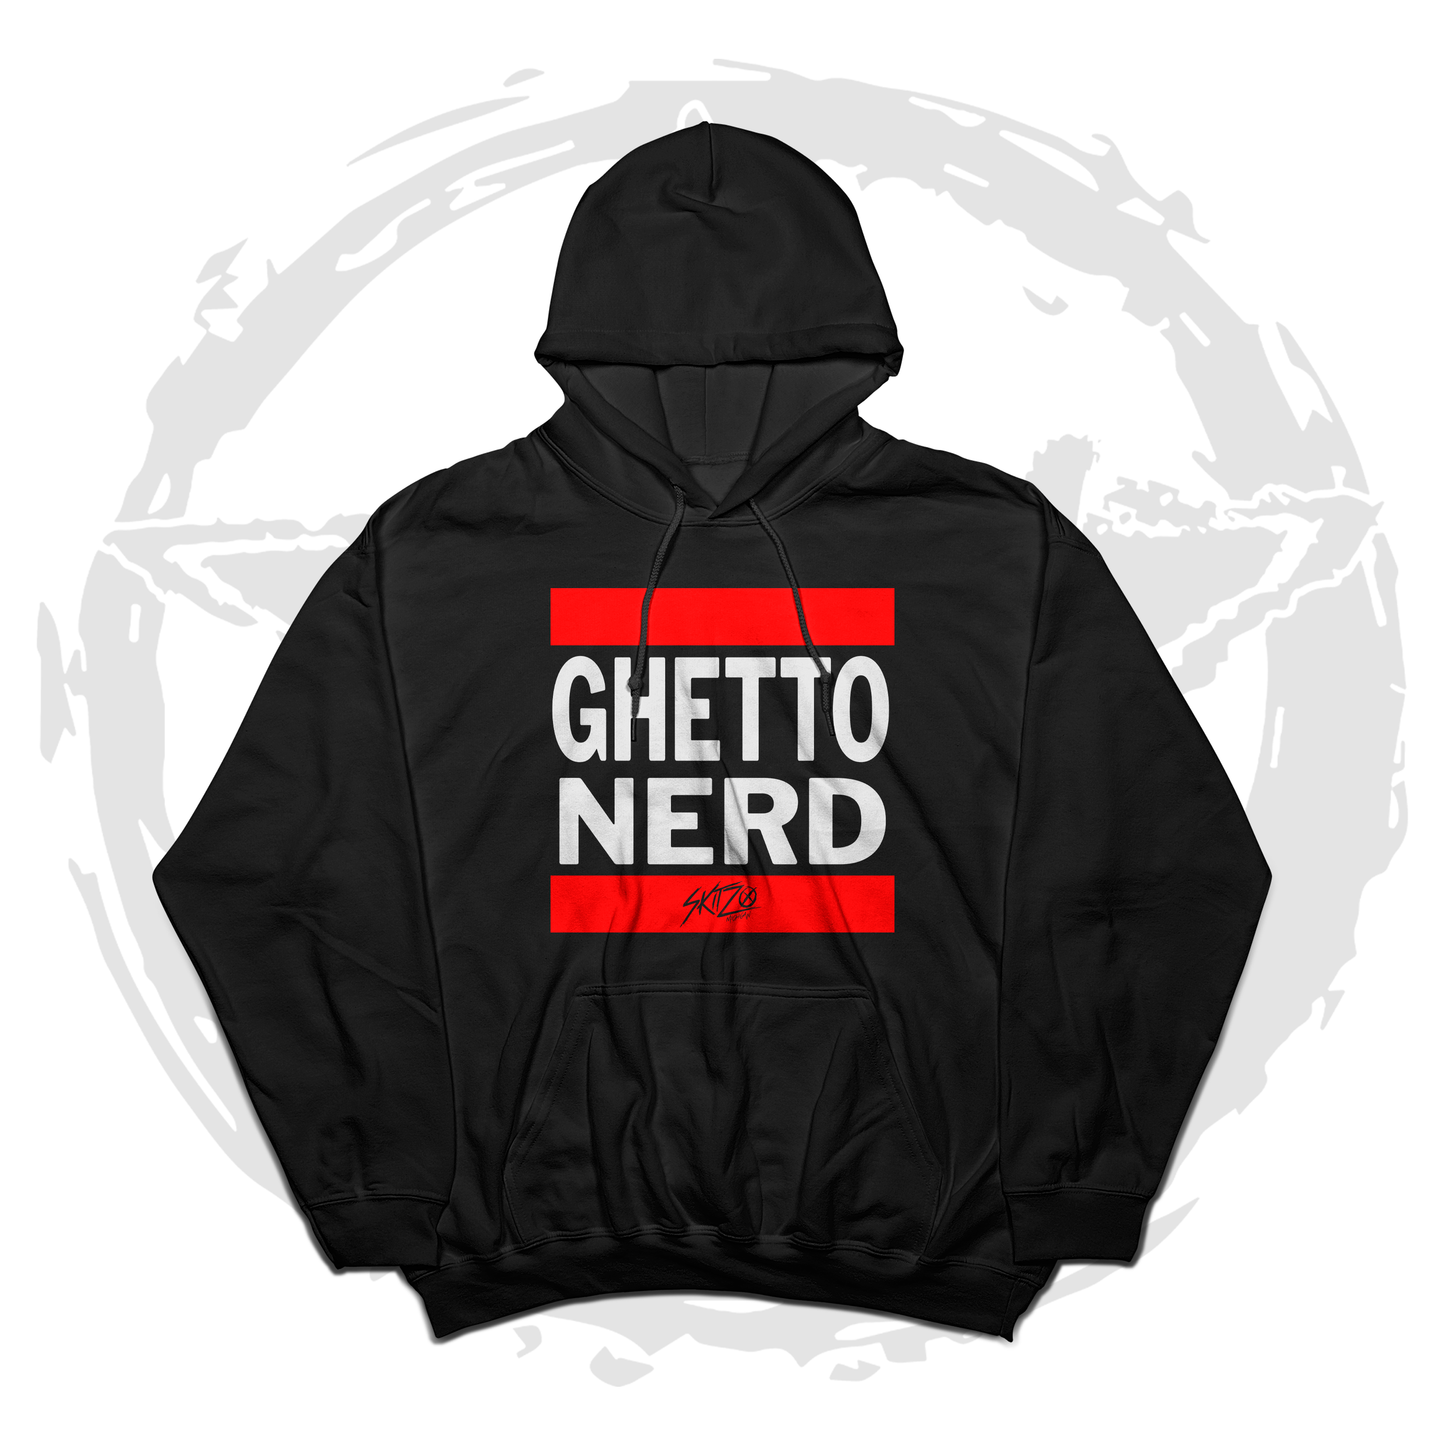 Skitzo "Ghetto Nerd" Hoodie